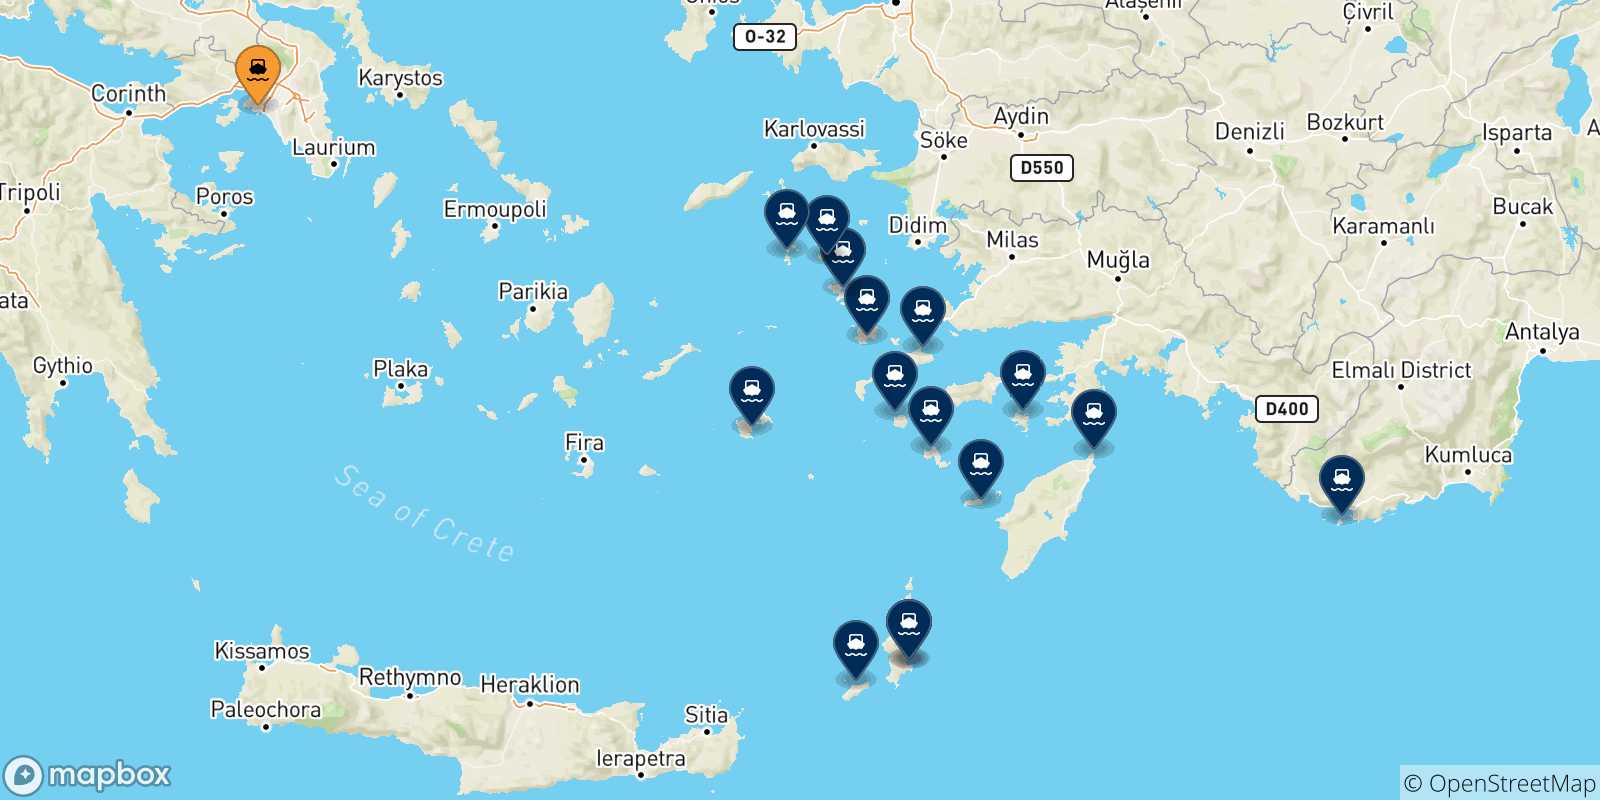 Mappa delle possibili rotte tra Pireo e le Isole Dodecaneso